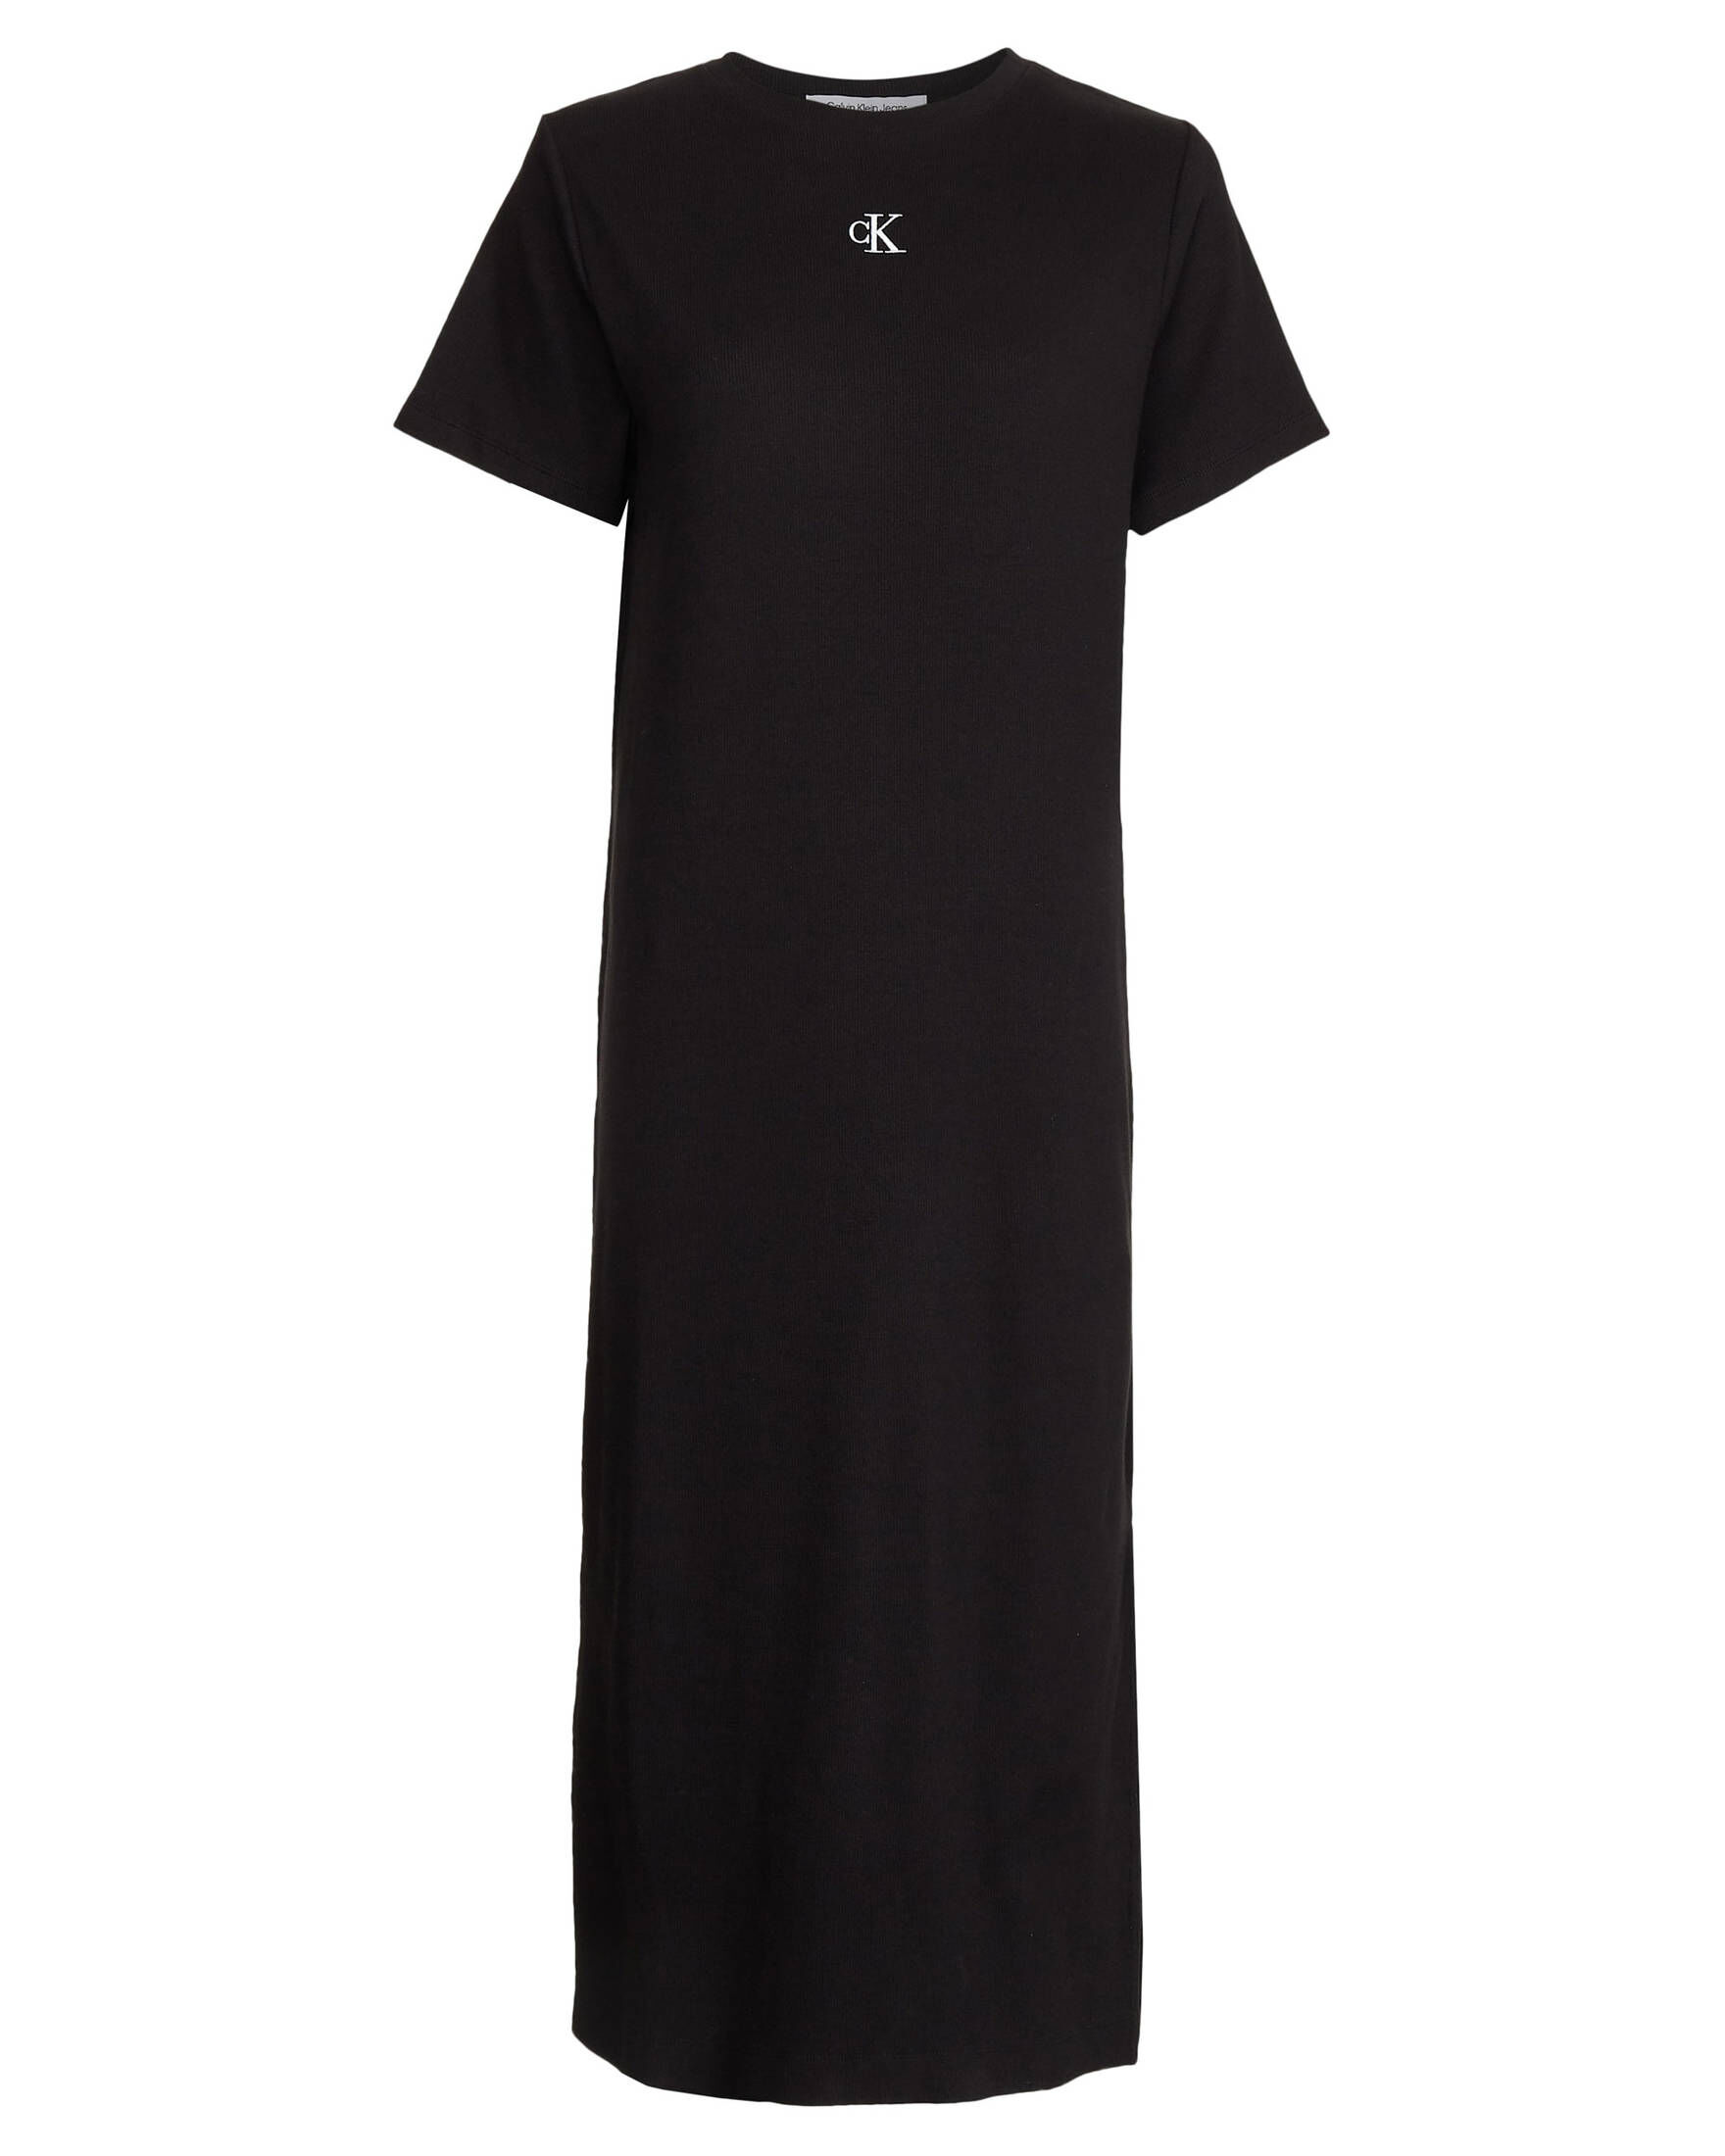 CALVIN KLEIN JEANS Damen Kleid CK RIB LONG T-SHIRT DRESS kaufen | engelhorn